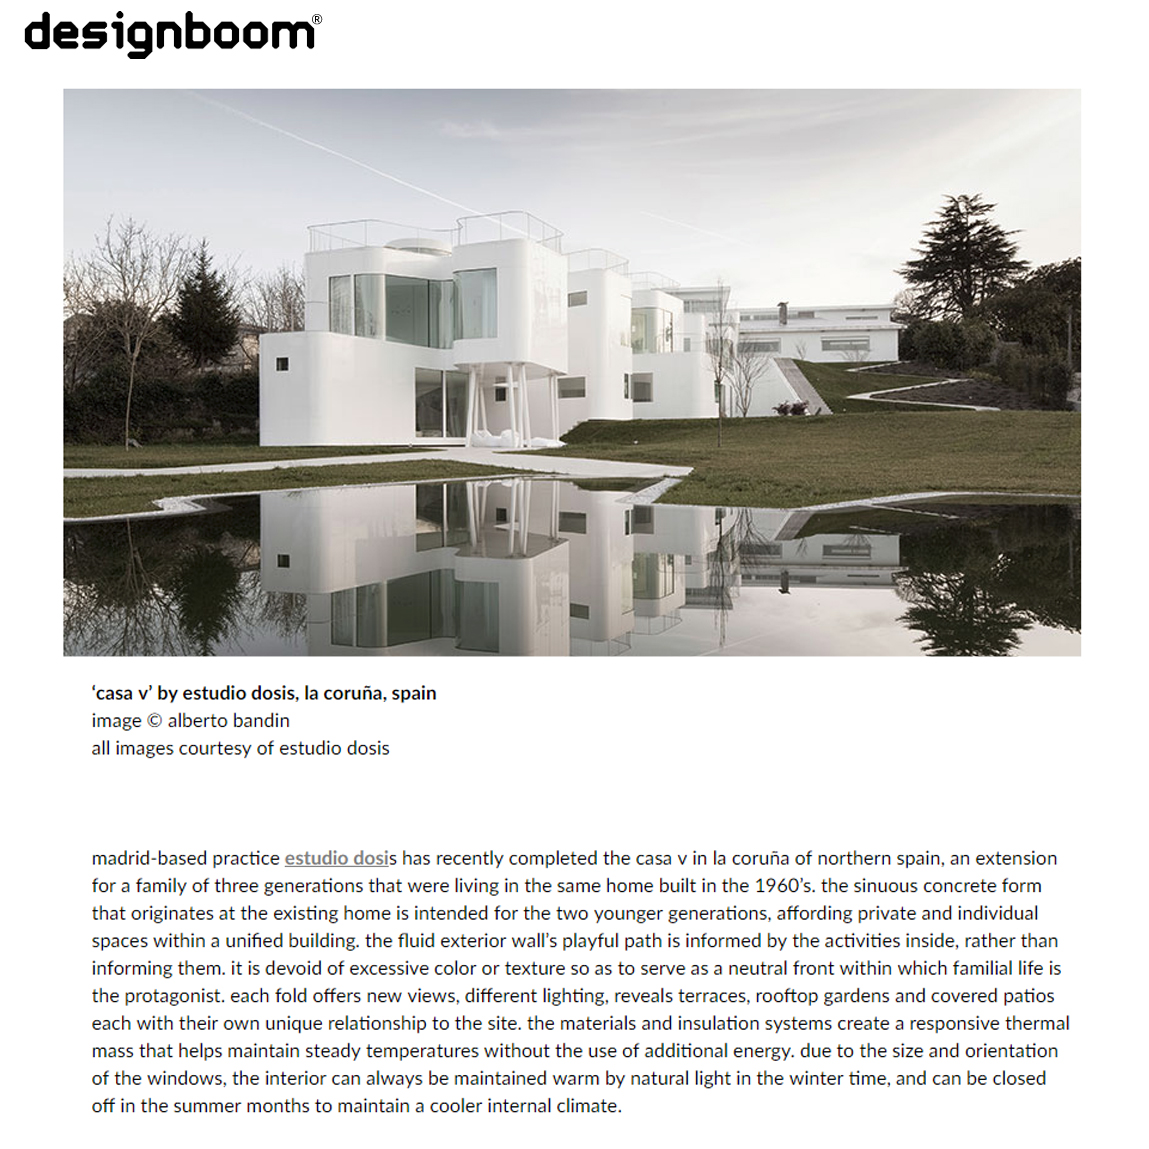 DesignBoom. 2014